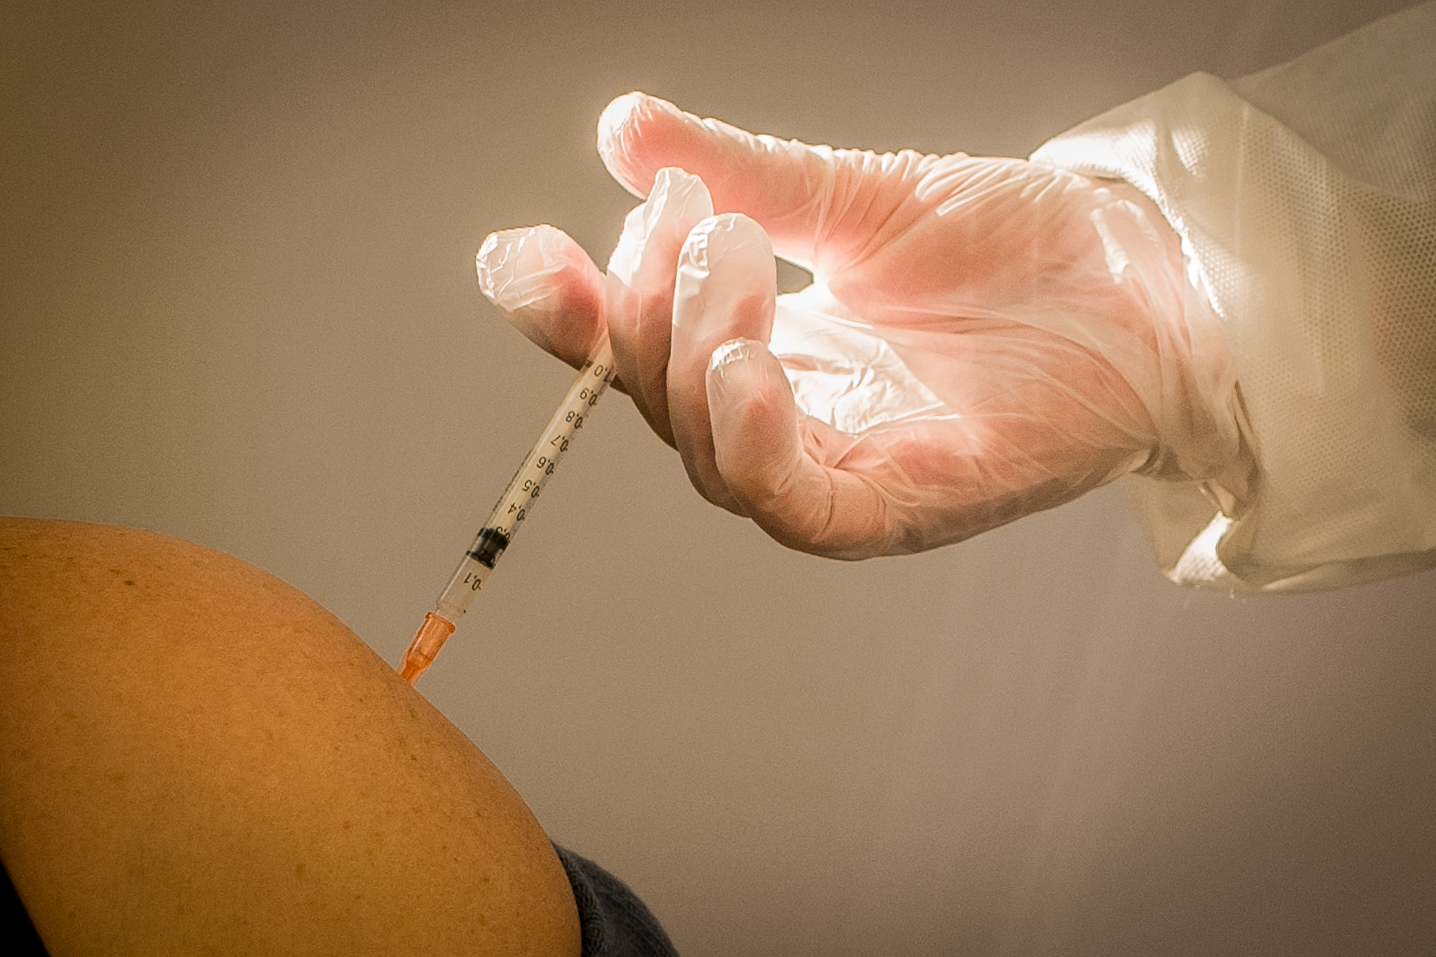 Iss, nel mondo 58 studi clinici sui vaccini anti-Covid-19, 7 in fase 3